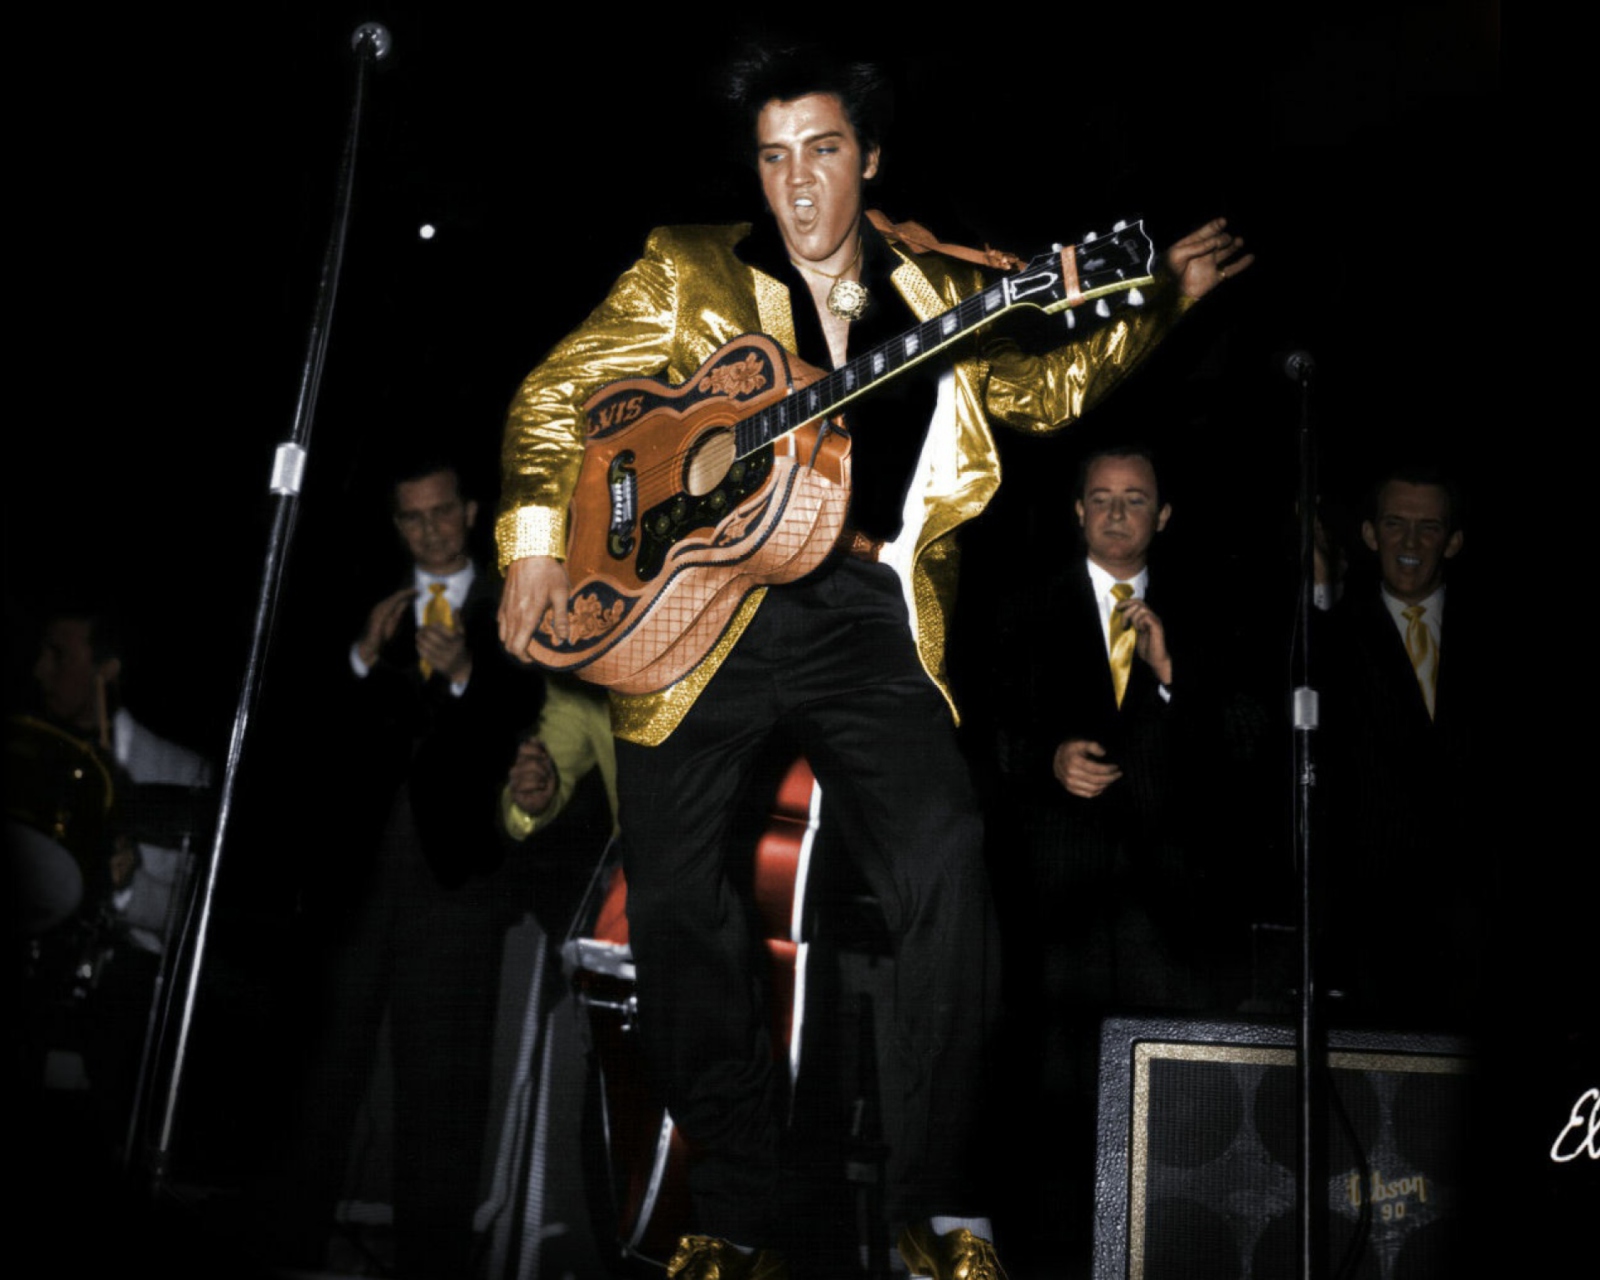 Das Elvis Presley 1956 Wallpaper 1600x1280